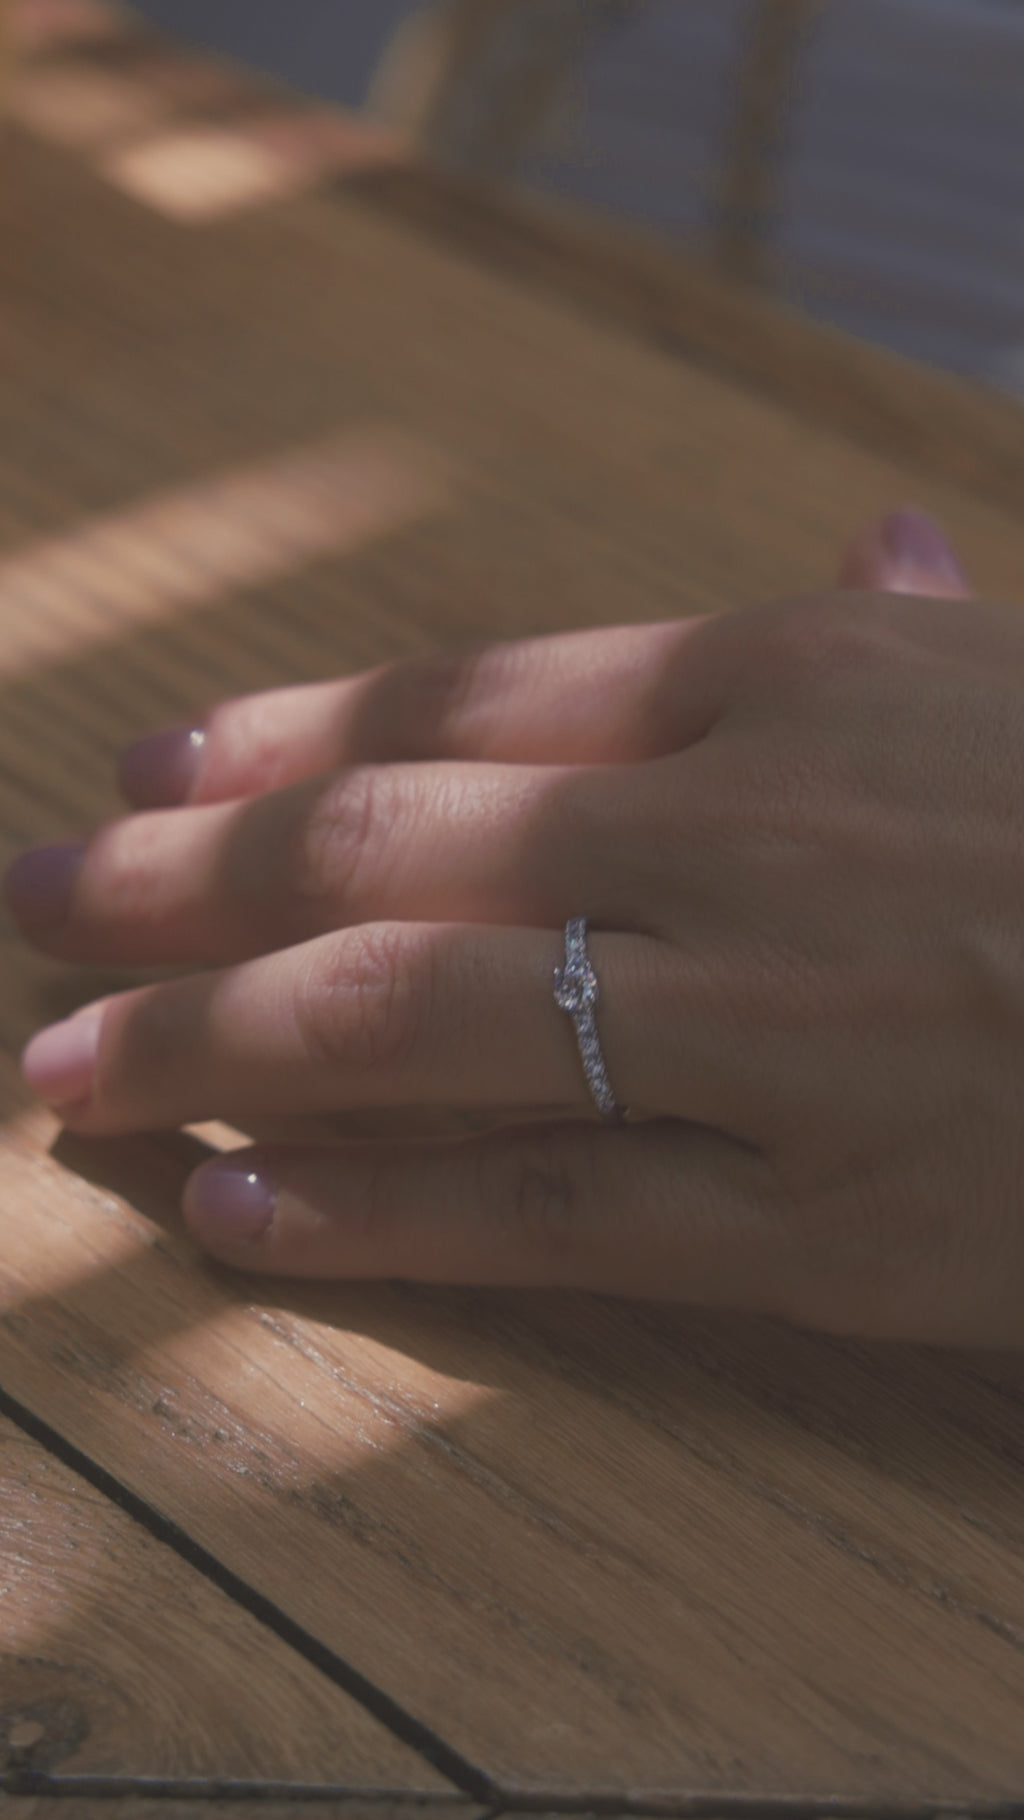 Μονόπετρο δαχτυλίδι με διαμάντι, κατασκευασμένο από λευκόχρυσο. πλαϊνές πέτρες από μικρότερα διαμάντια και καστόνι με τέσσερα δόντια, φορεμένο σε γυναικείο χέρι.